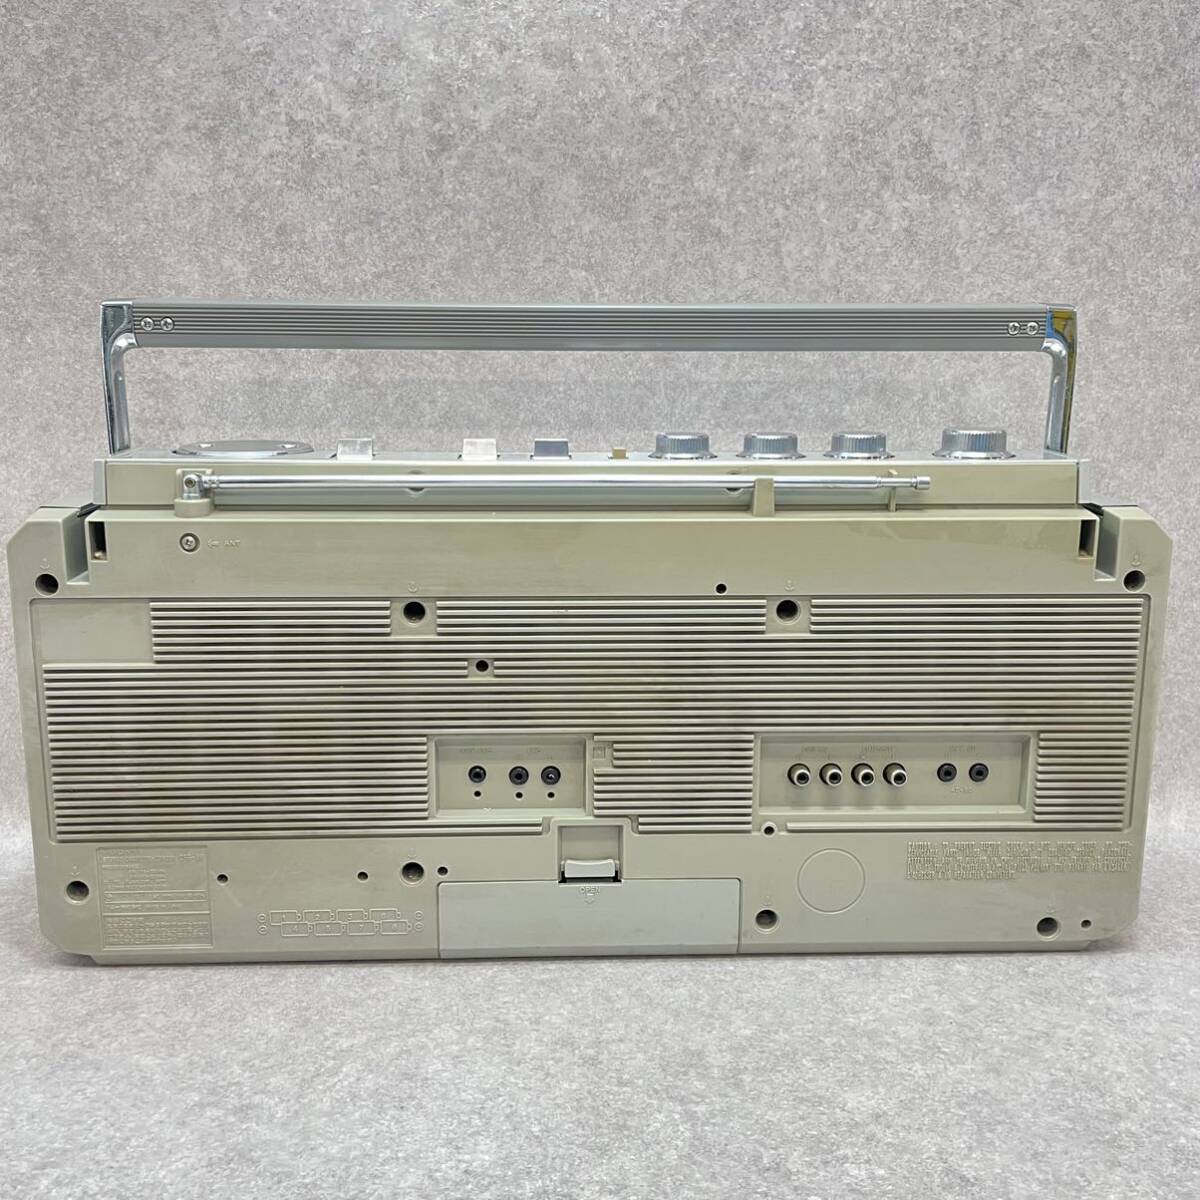 Y5013* воспроизведение OK SONY Sony FM/AM стерео кассета ko-da- магнитола CFS-66 Energie 66 изначальный с коробкой Showa Retro 